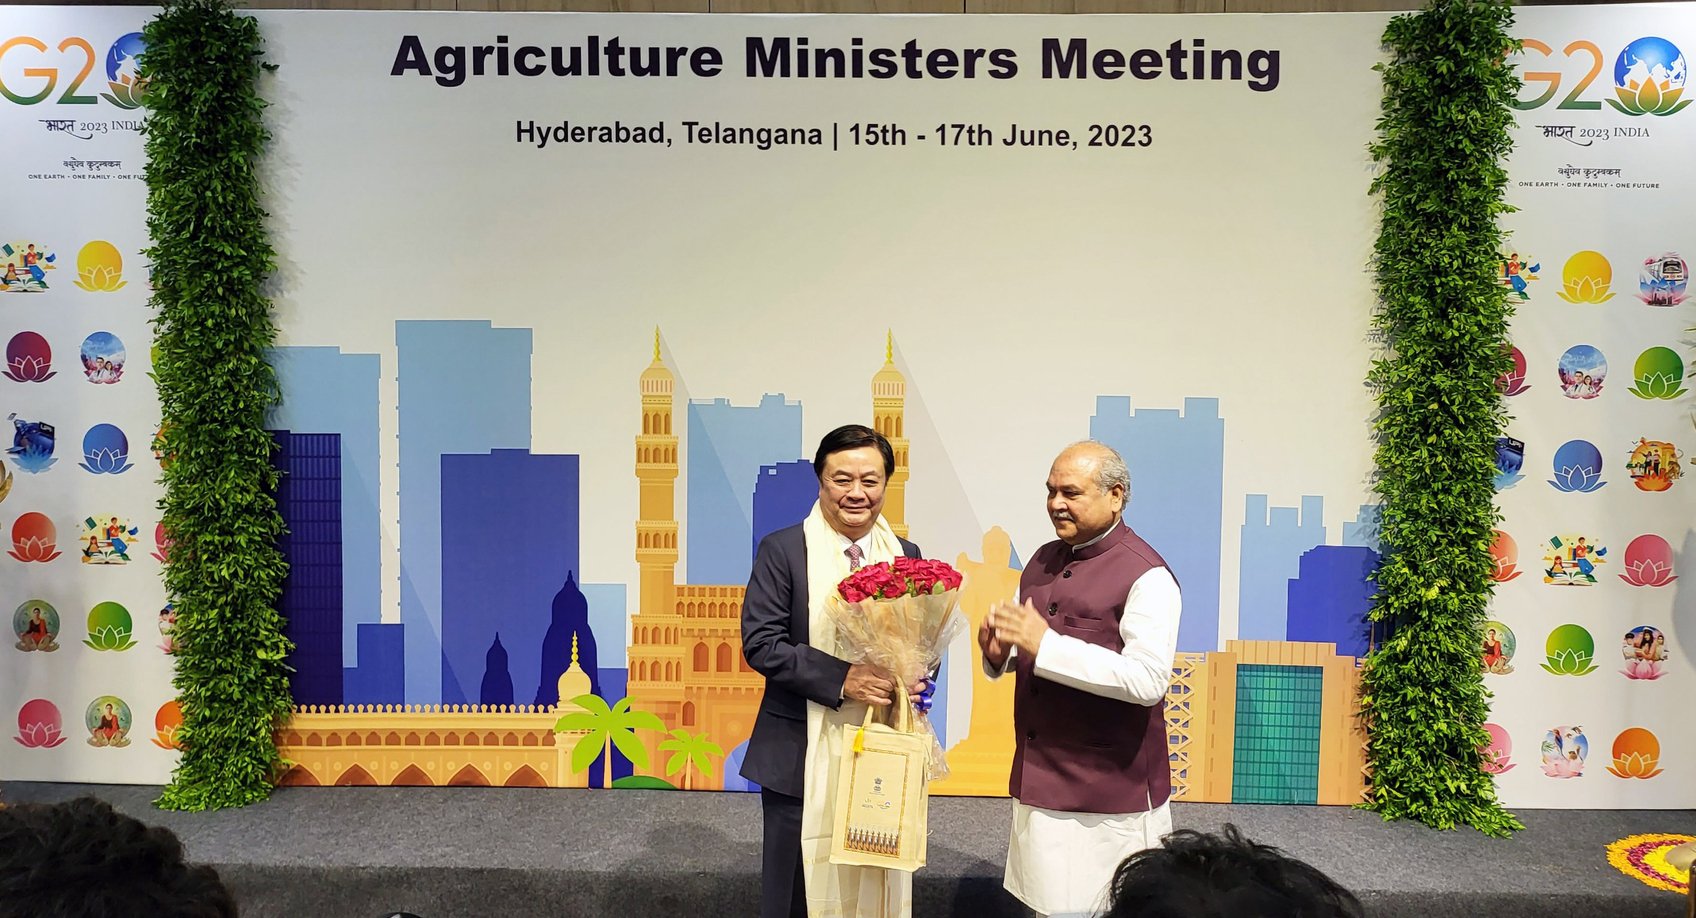 Bộ trưởng Bộ Nông nghiệp và Phúc lợi Nông dân Ấn Độ Narendra Singh Tomar chào mừng Bộ trưởng Lê Minh Hoan đến tham dự Hội nghị Bộ trưởng Nông nghiệp G20 tại Hydrabad, Ấn Độ.